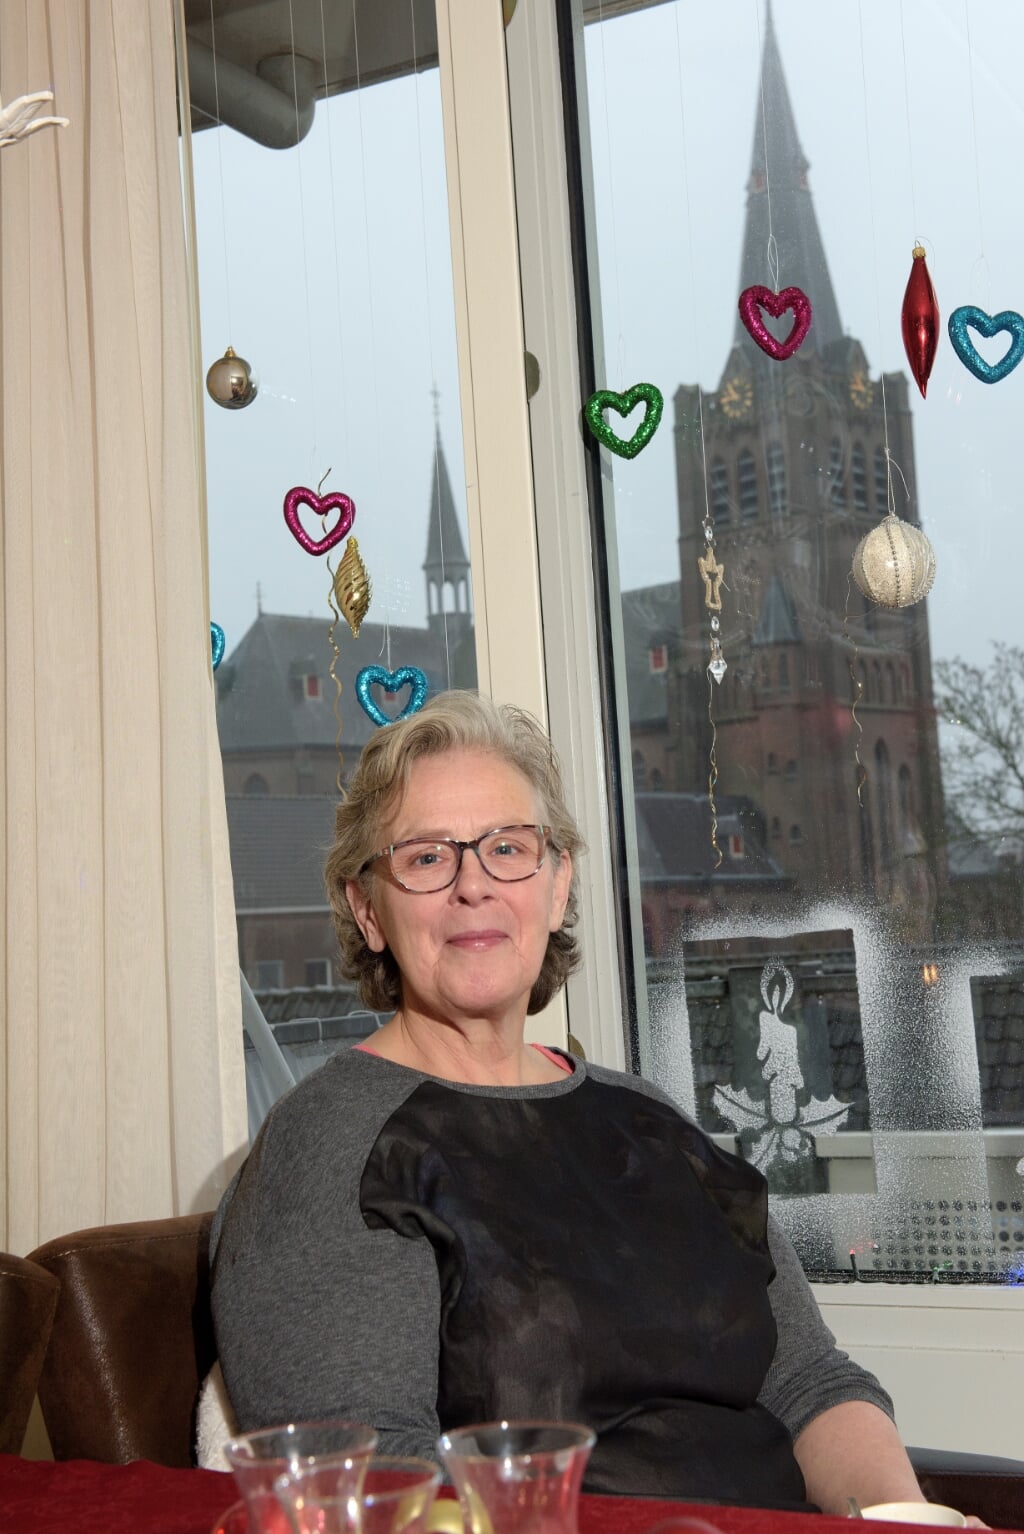 Mevrouw Kroon verhuisde eind vorig jaar van een eengezinswoning in Oudkarspel naar een seniorenappartement in Noord-Scharwoude. 